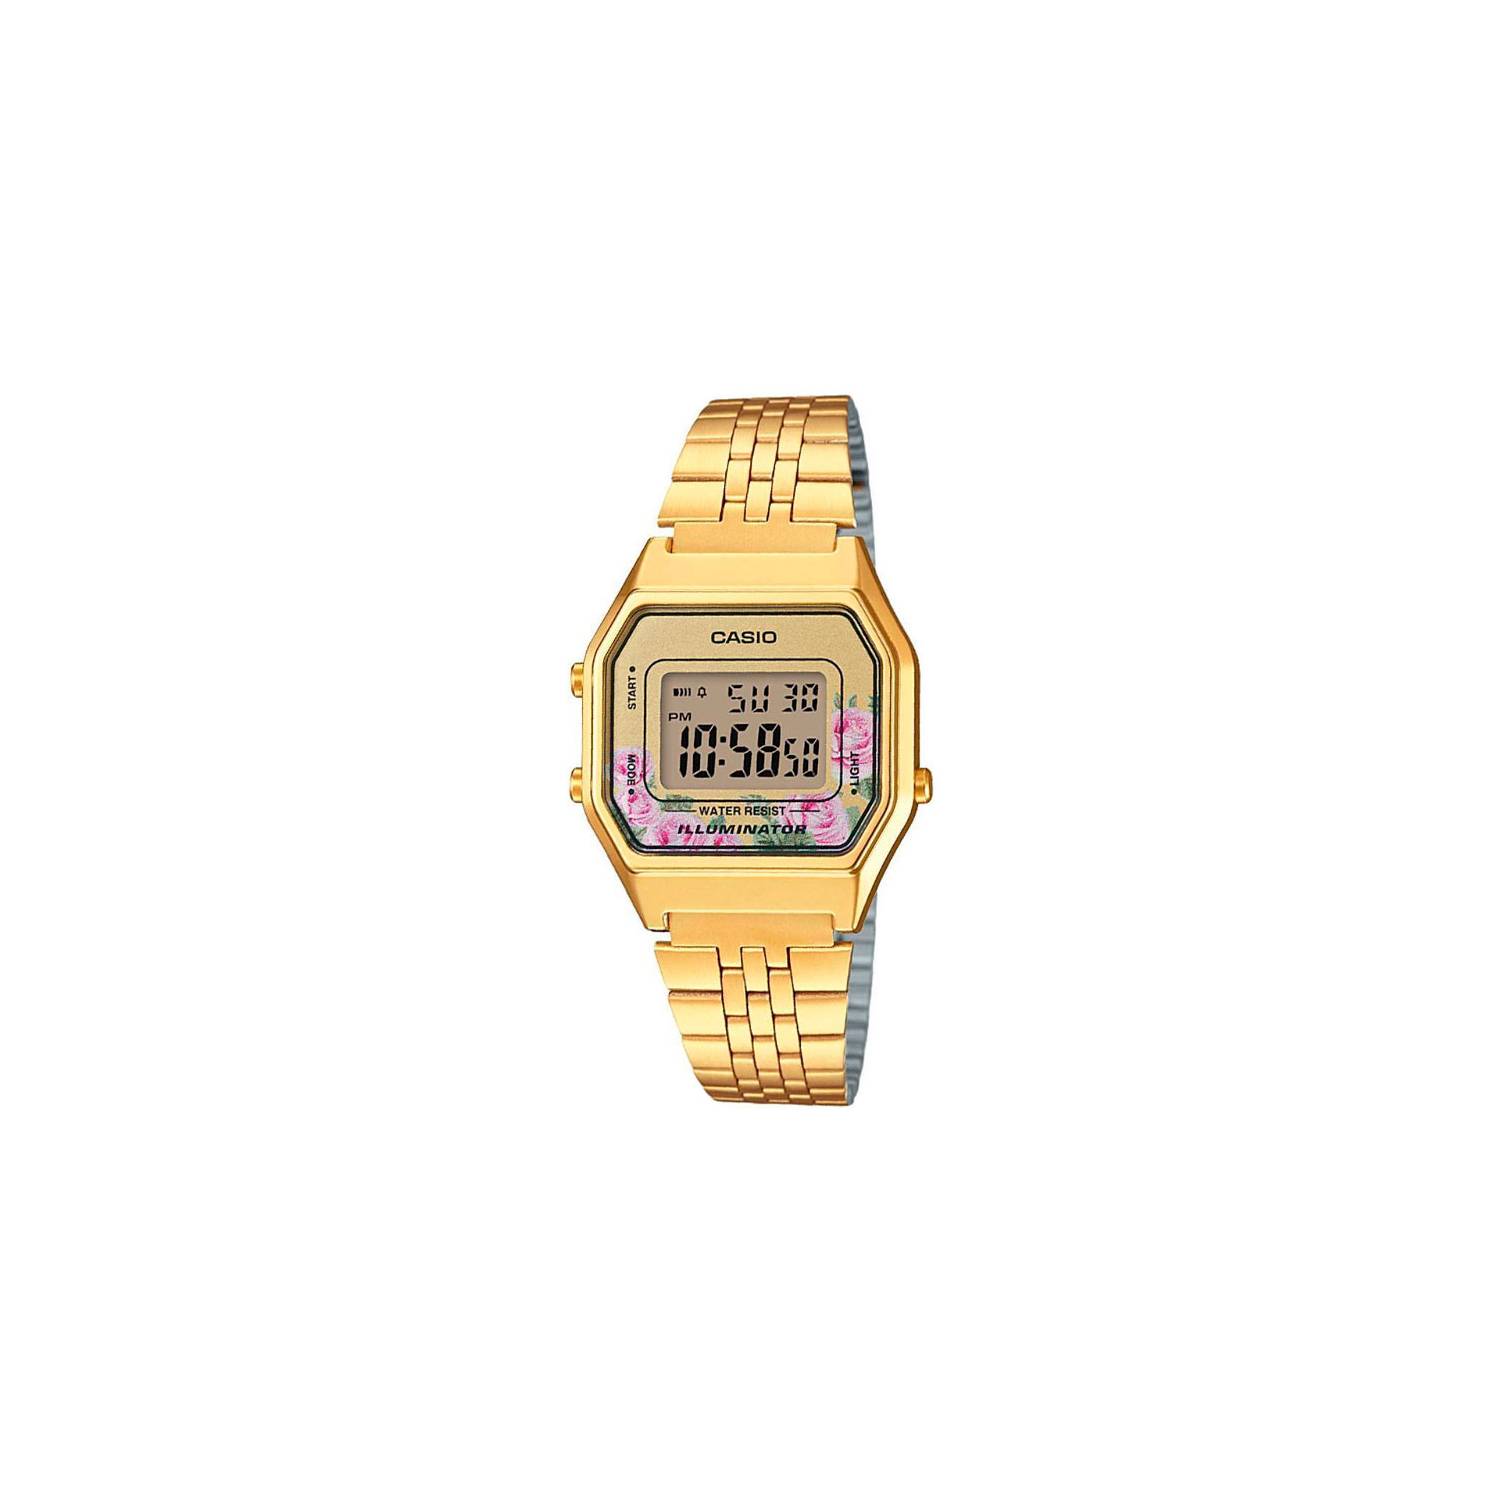 Reloj CASIO A168WG-9EF - CASIO dorado - Casio moda 